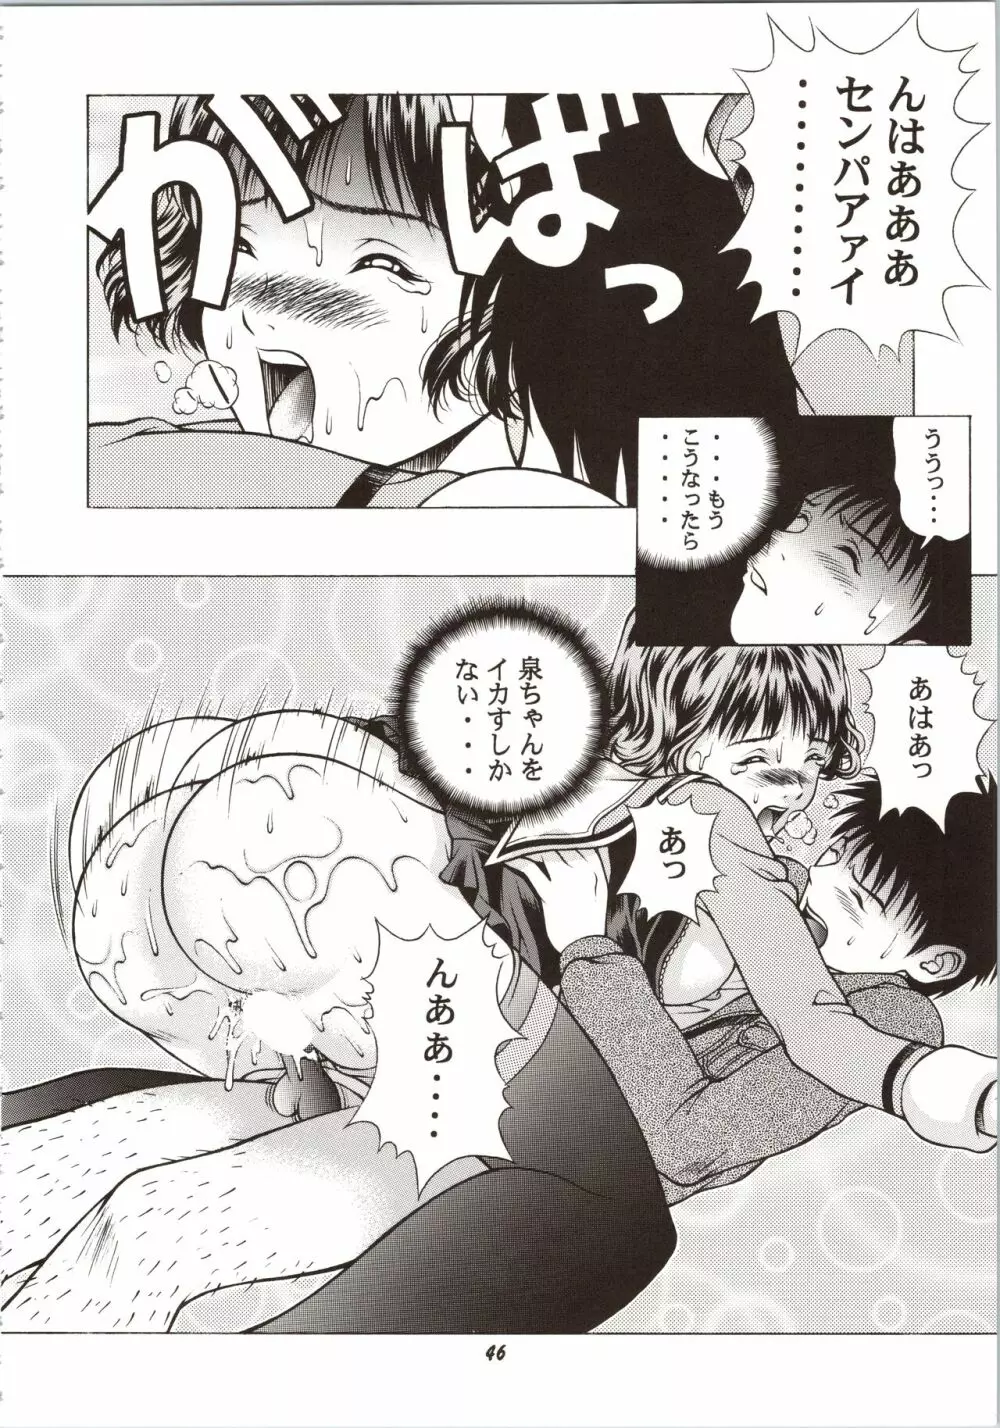 ふわふわりんロータスplus - page46